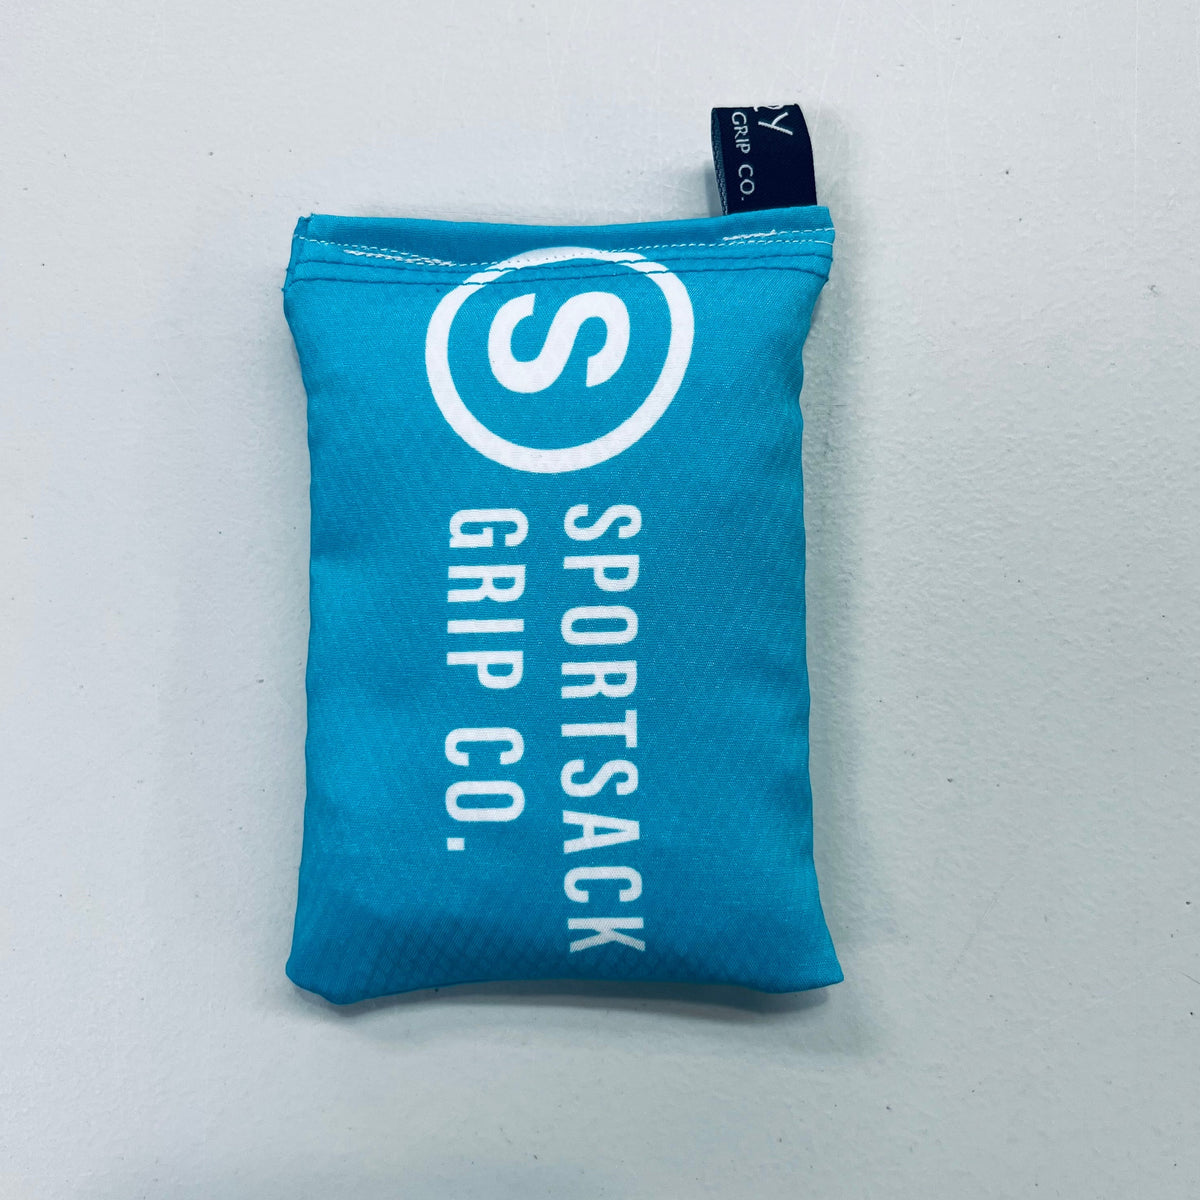 Kastaplast Birdie Bag - Grip Enhancer by Sportsack – Rare Air Discs